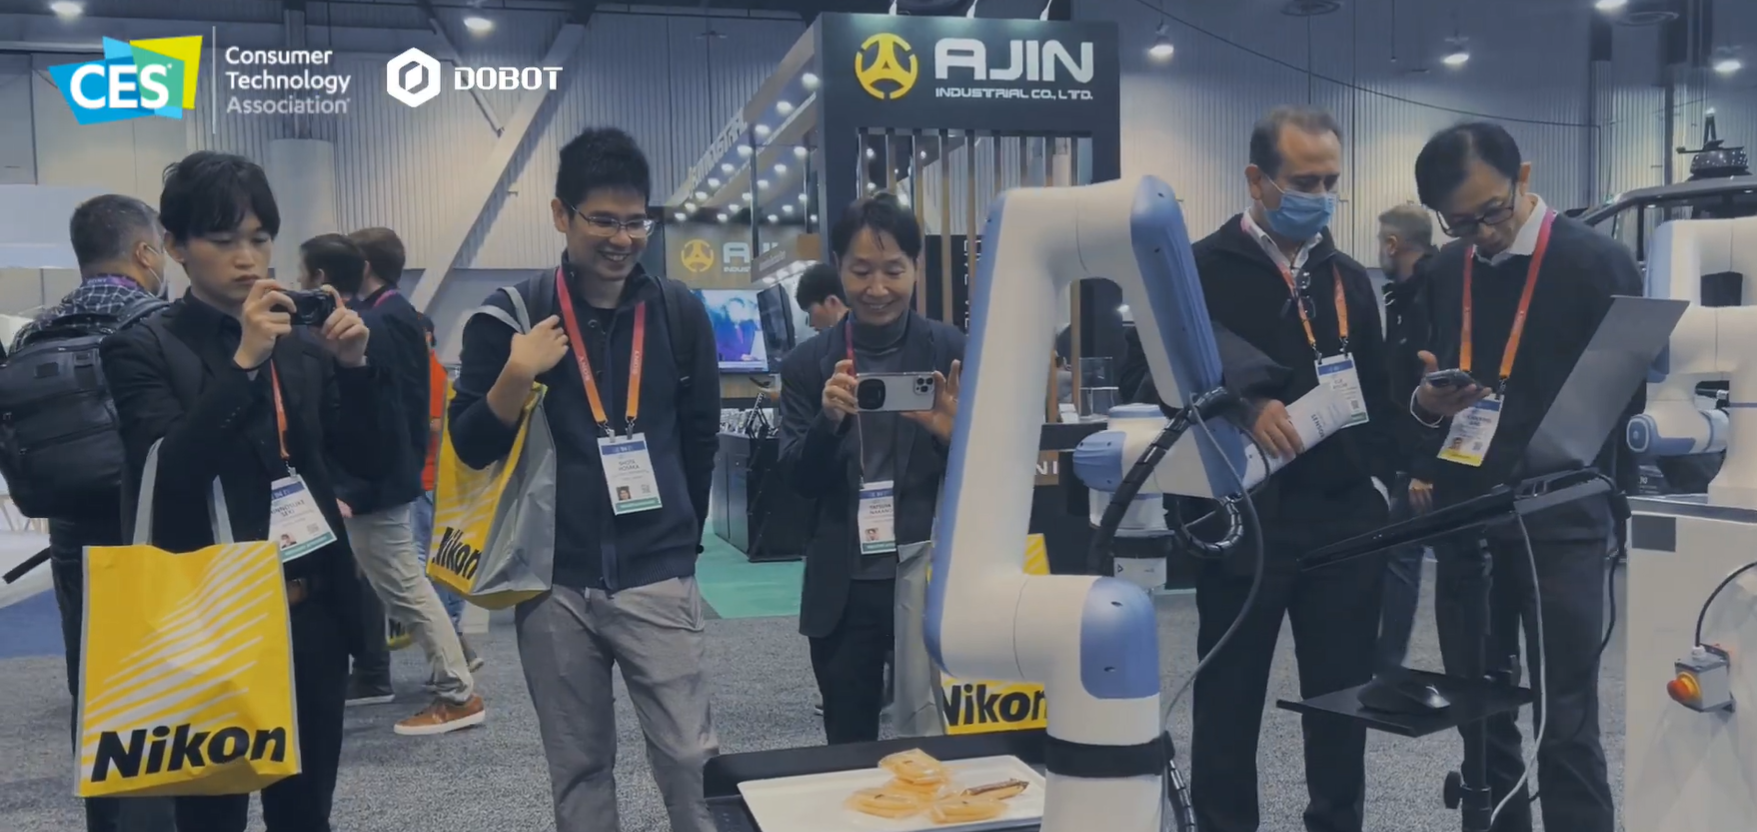 越疆 Nova 机器人亮相美国 CES 大受欢迎，加速商业服务新应用